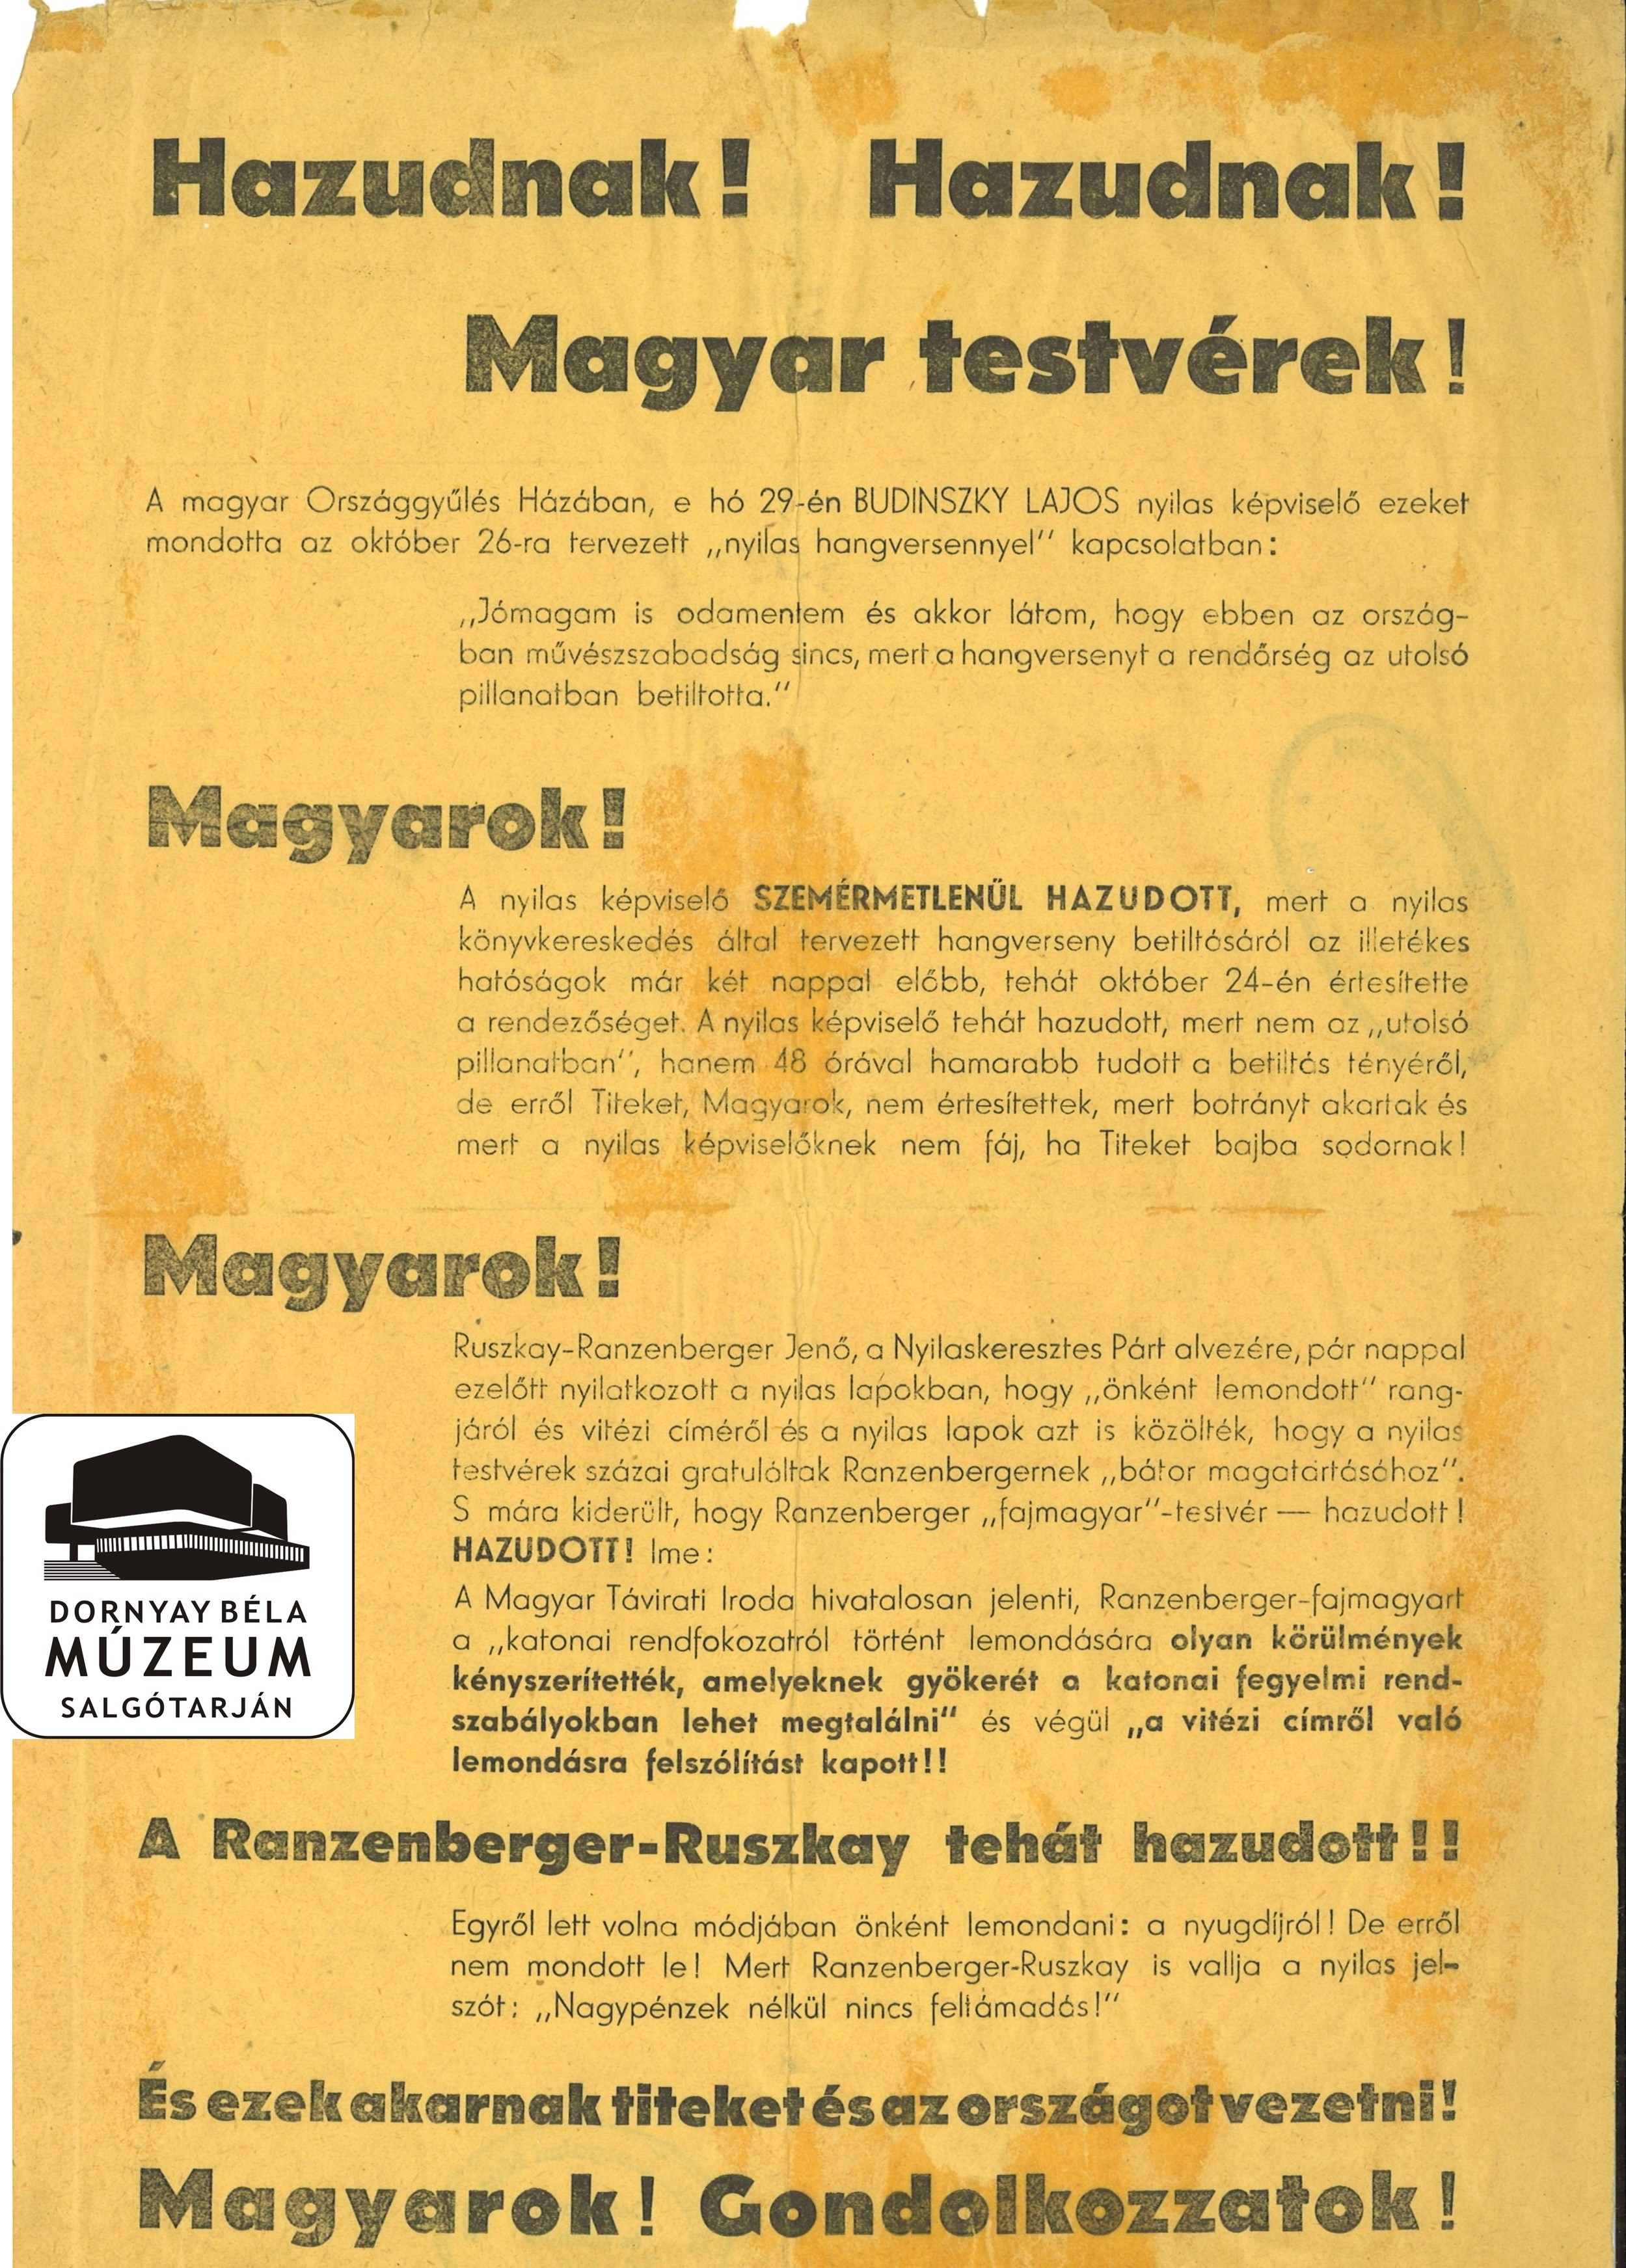 Nyilas vezetőt leleplező röpirat. (Dornyay Béla Múzeum, Salgótarján CC BY-NC-SA)